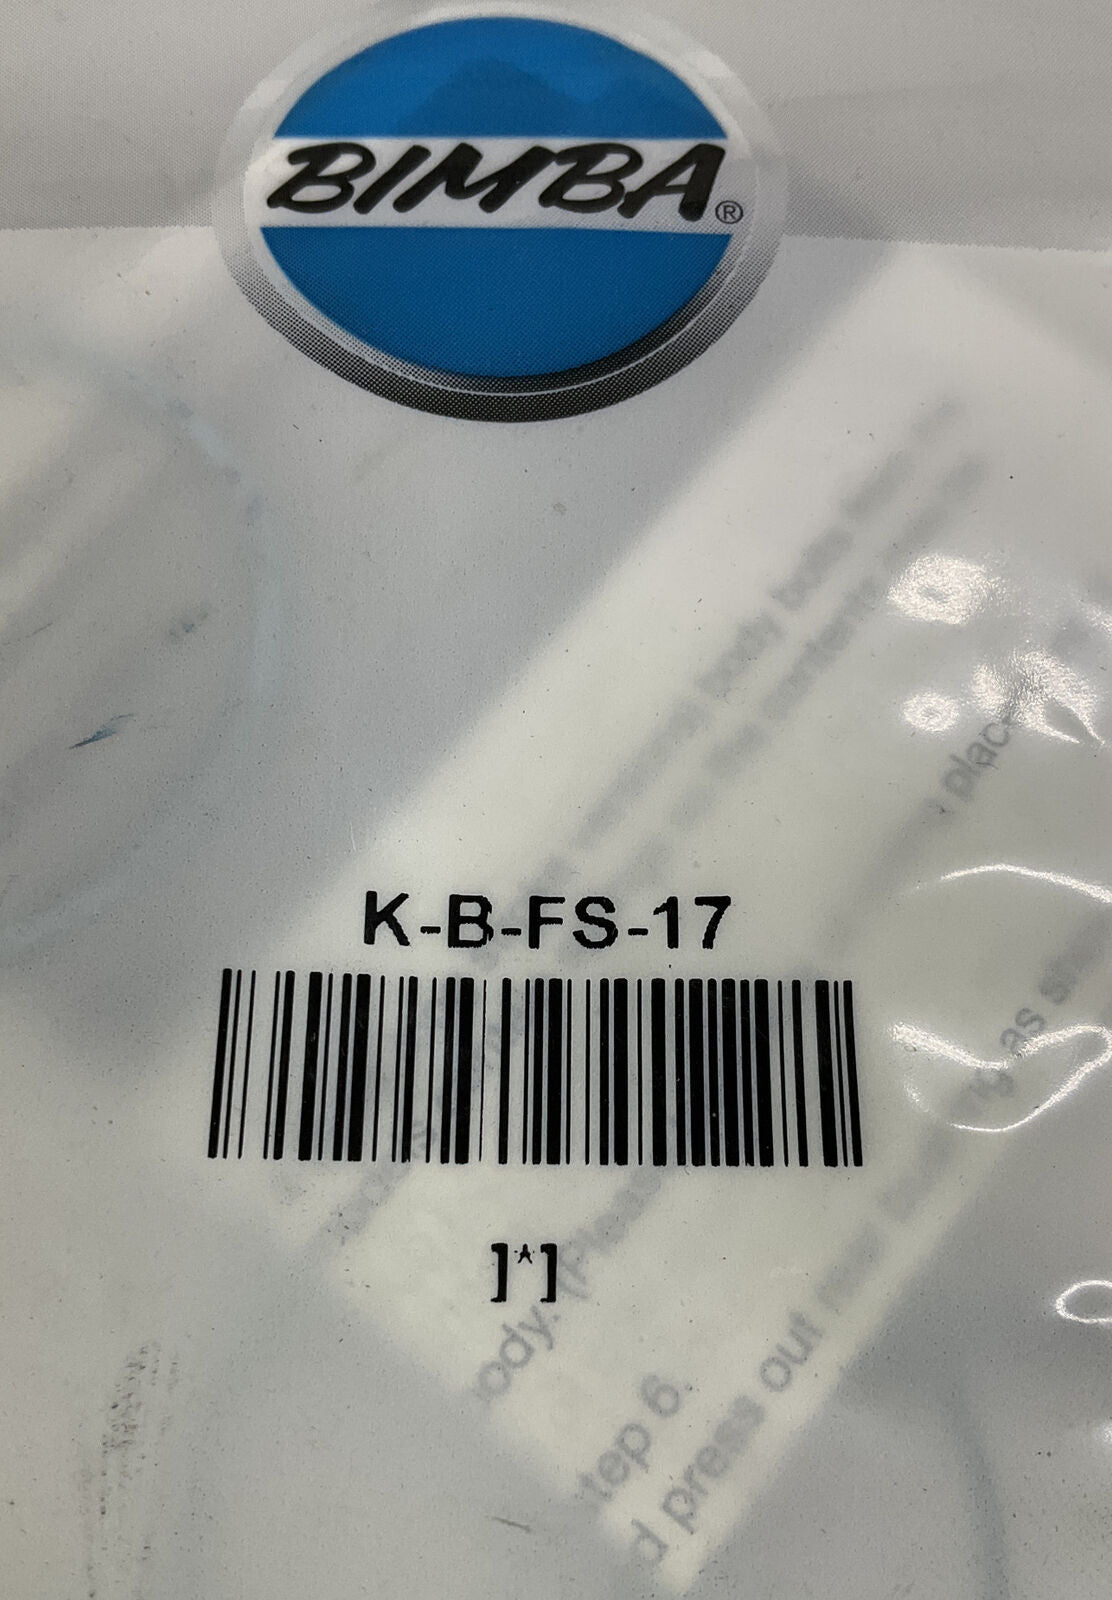 Bimba K-B-FS-17 New Cylinder Repair Kit Flat-1 & Flat Square (CL116) - 0